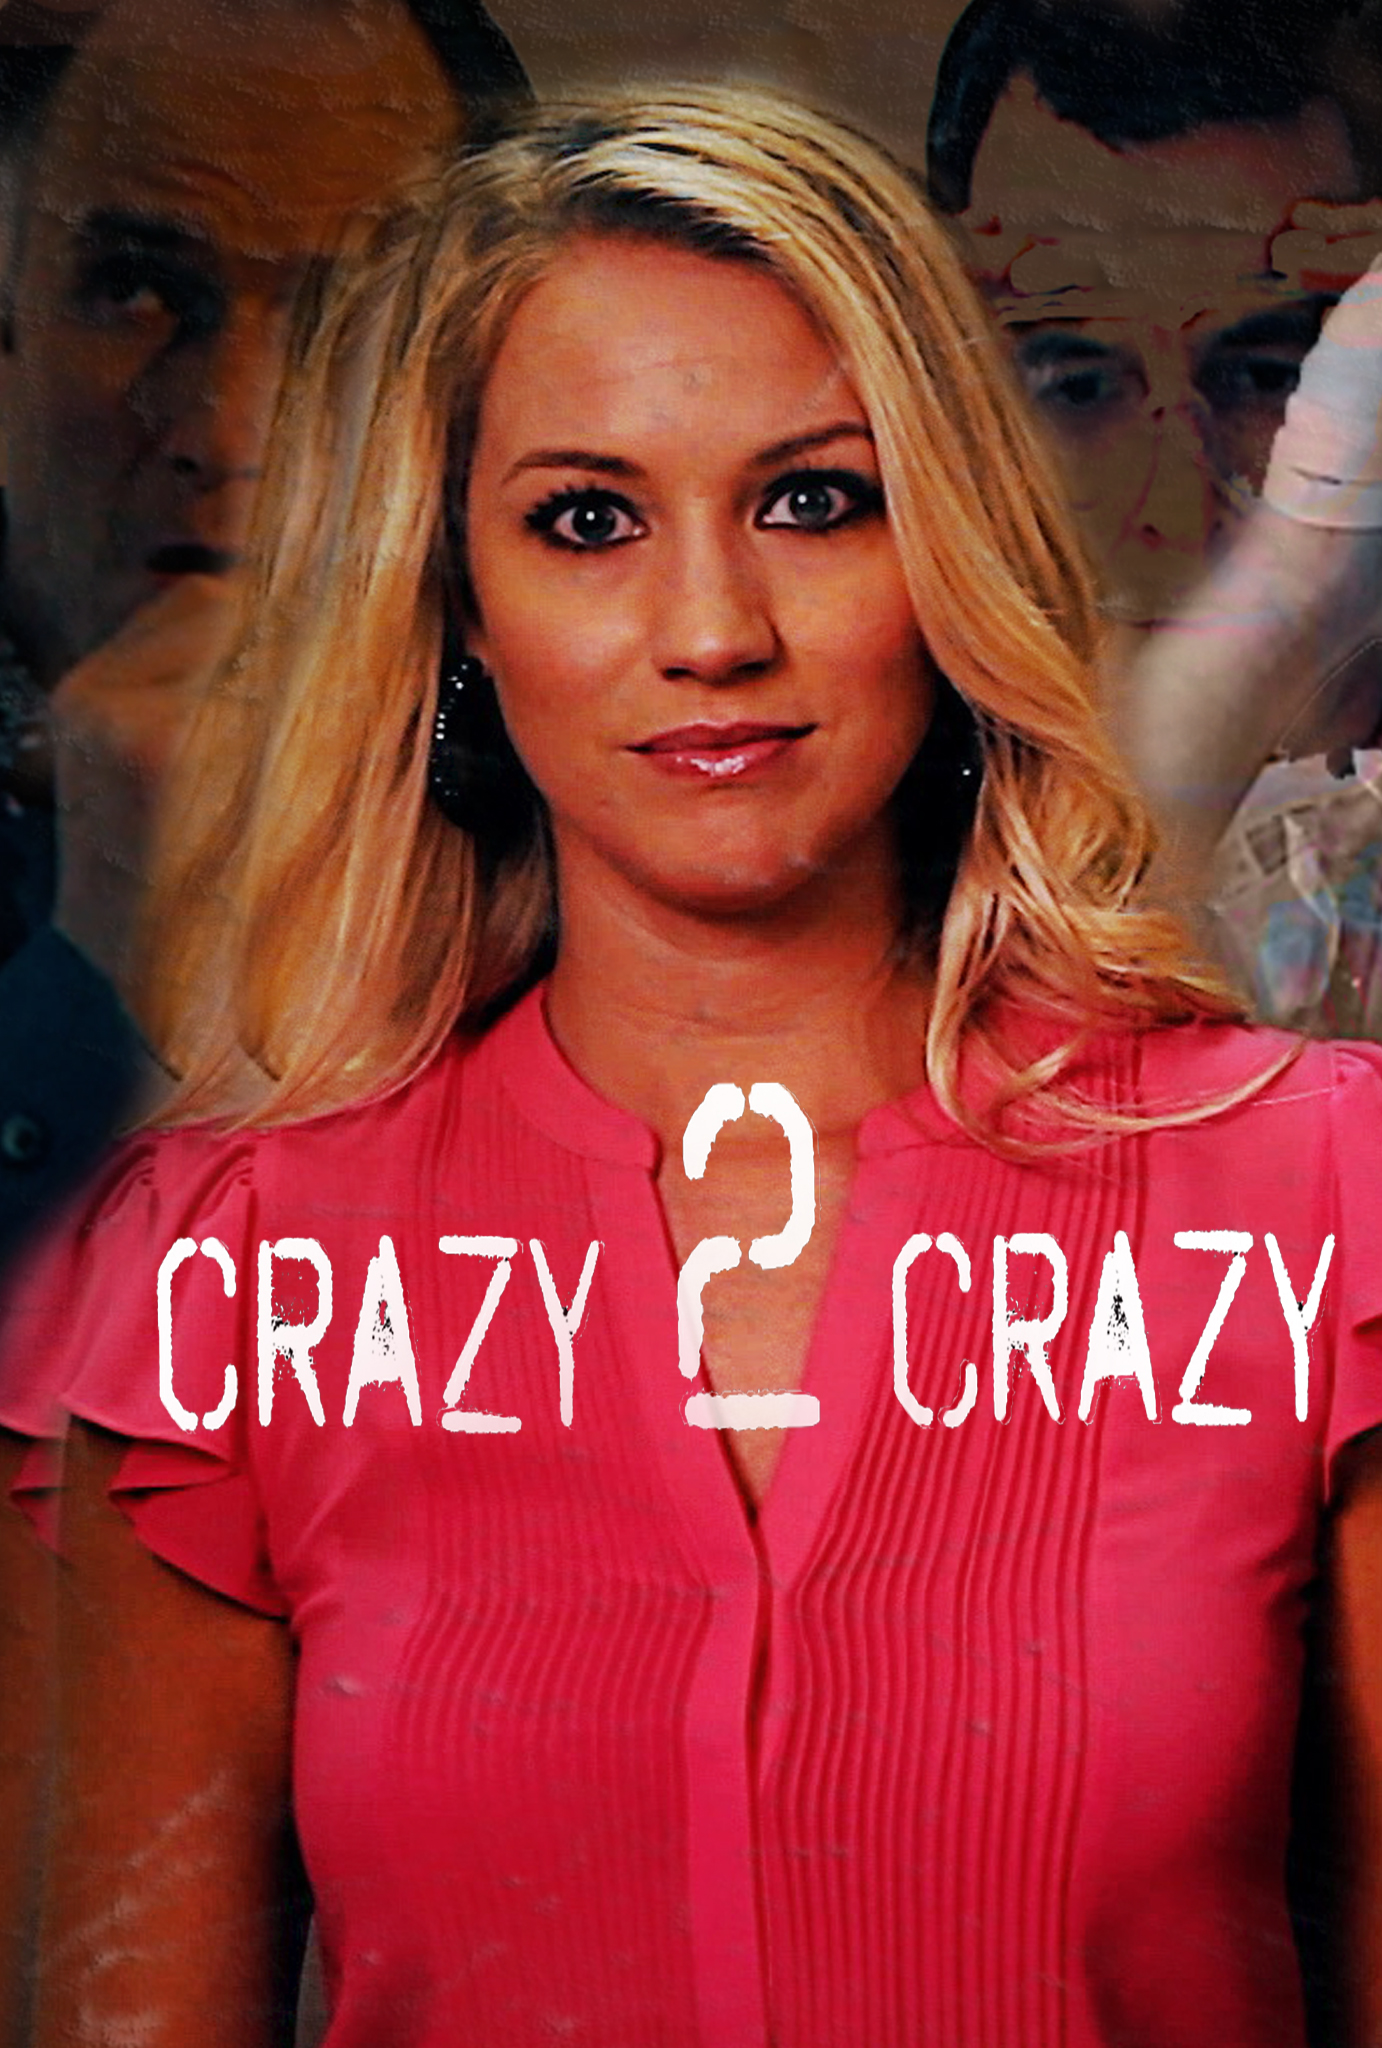 Nonton film Crazy 2 Crazy layarkaca21 indoxx1 ganool online streaming terbaru